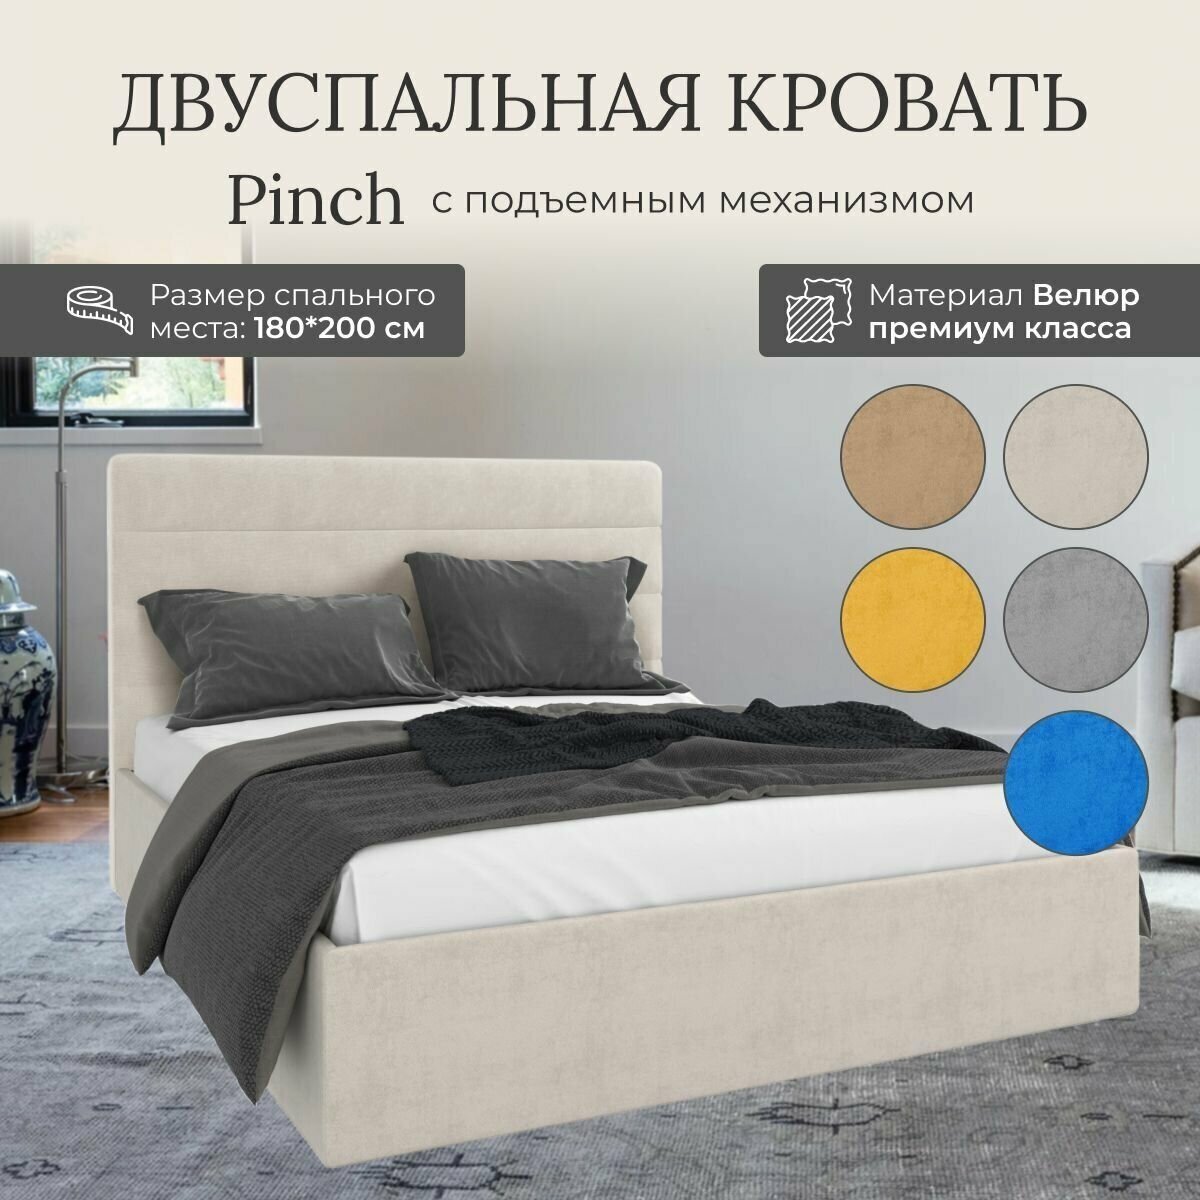 Кровать с подъемным механизмом Luxson Pinch двуспальная размер 180х200